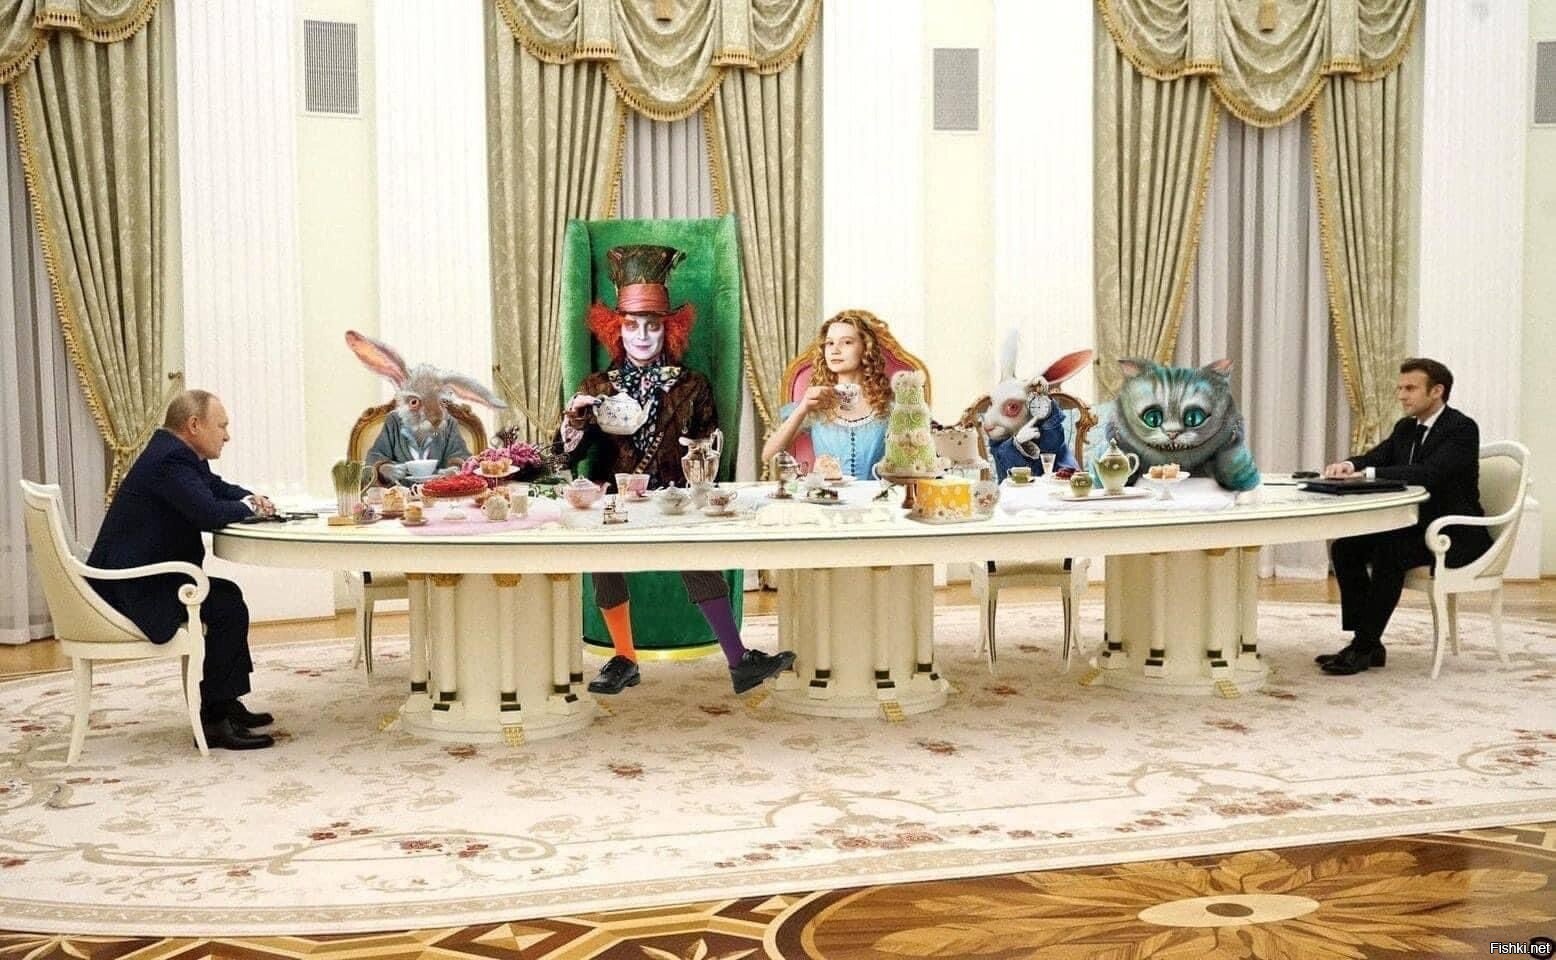 Стало известно, почему Путин и Макрон сидели за таким длинным столом